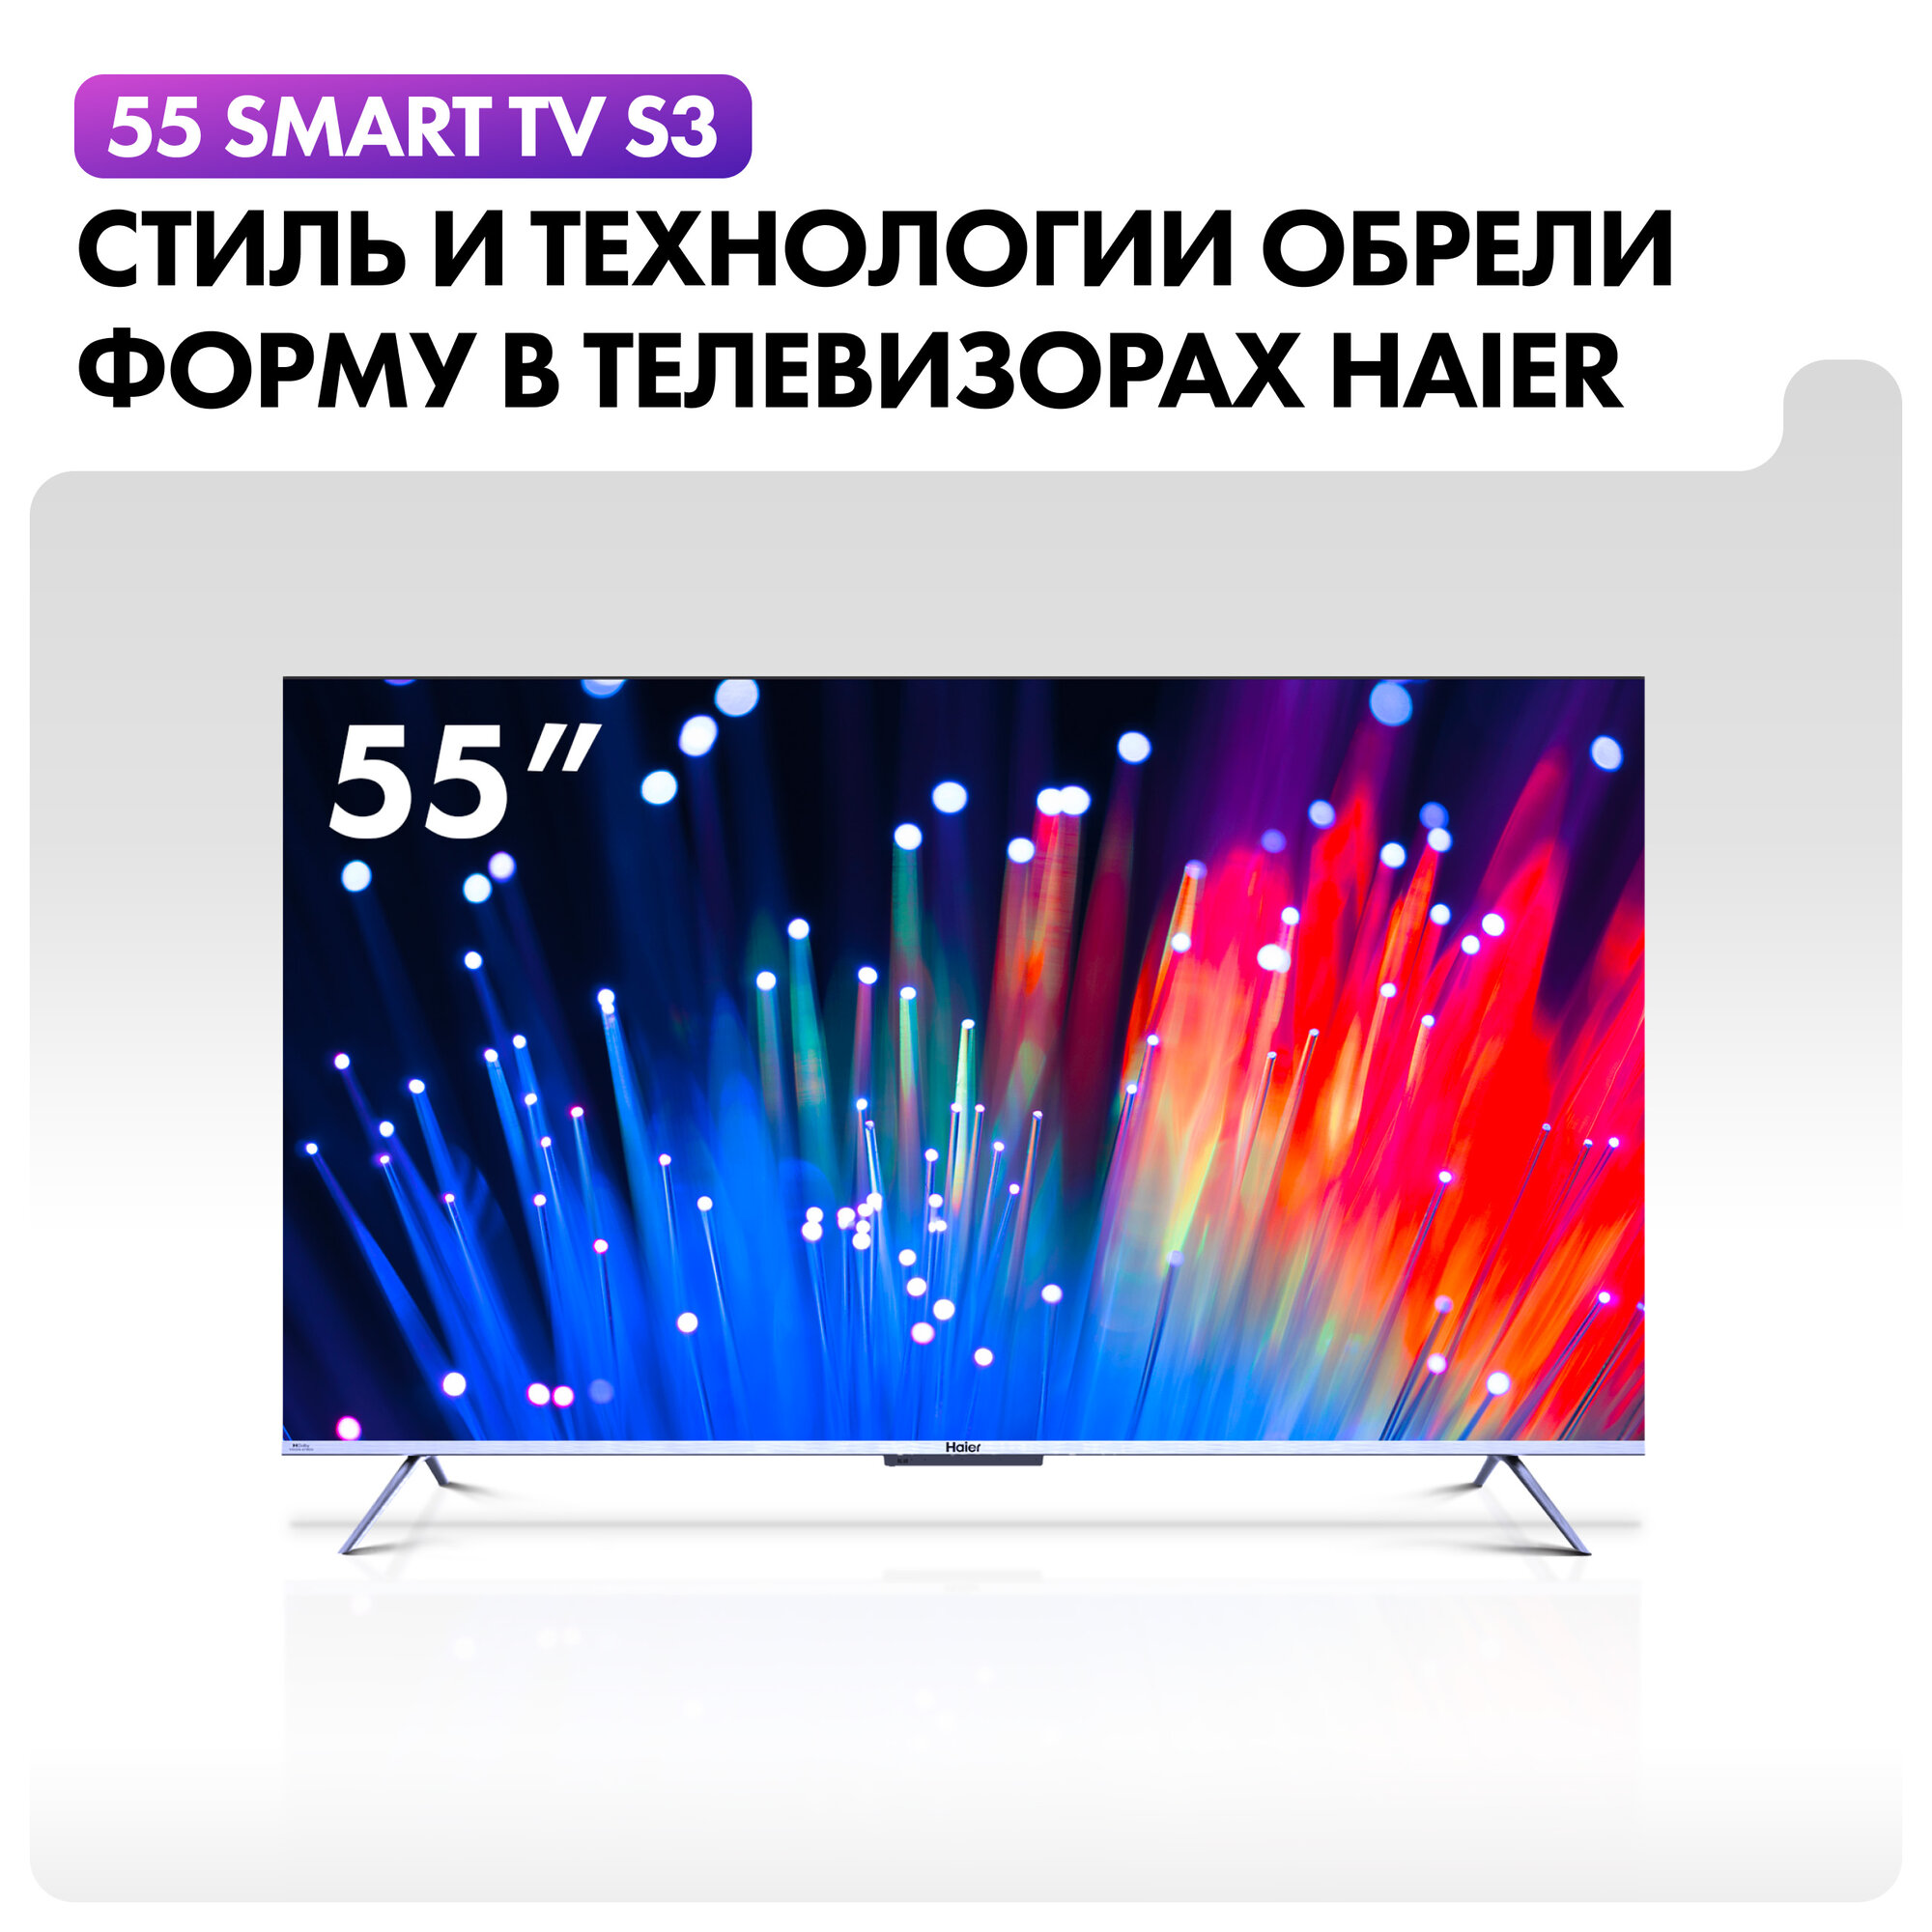 55" Телевизор Haier 55 Smart TV S3 HDR LED QLED HQLED